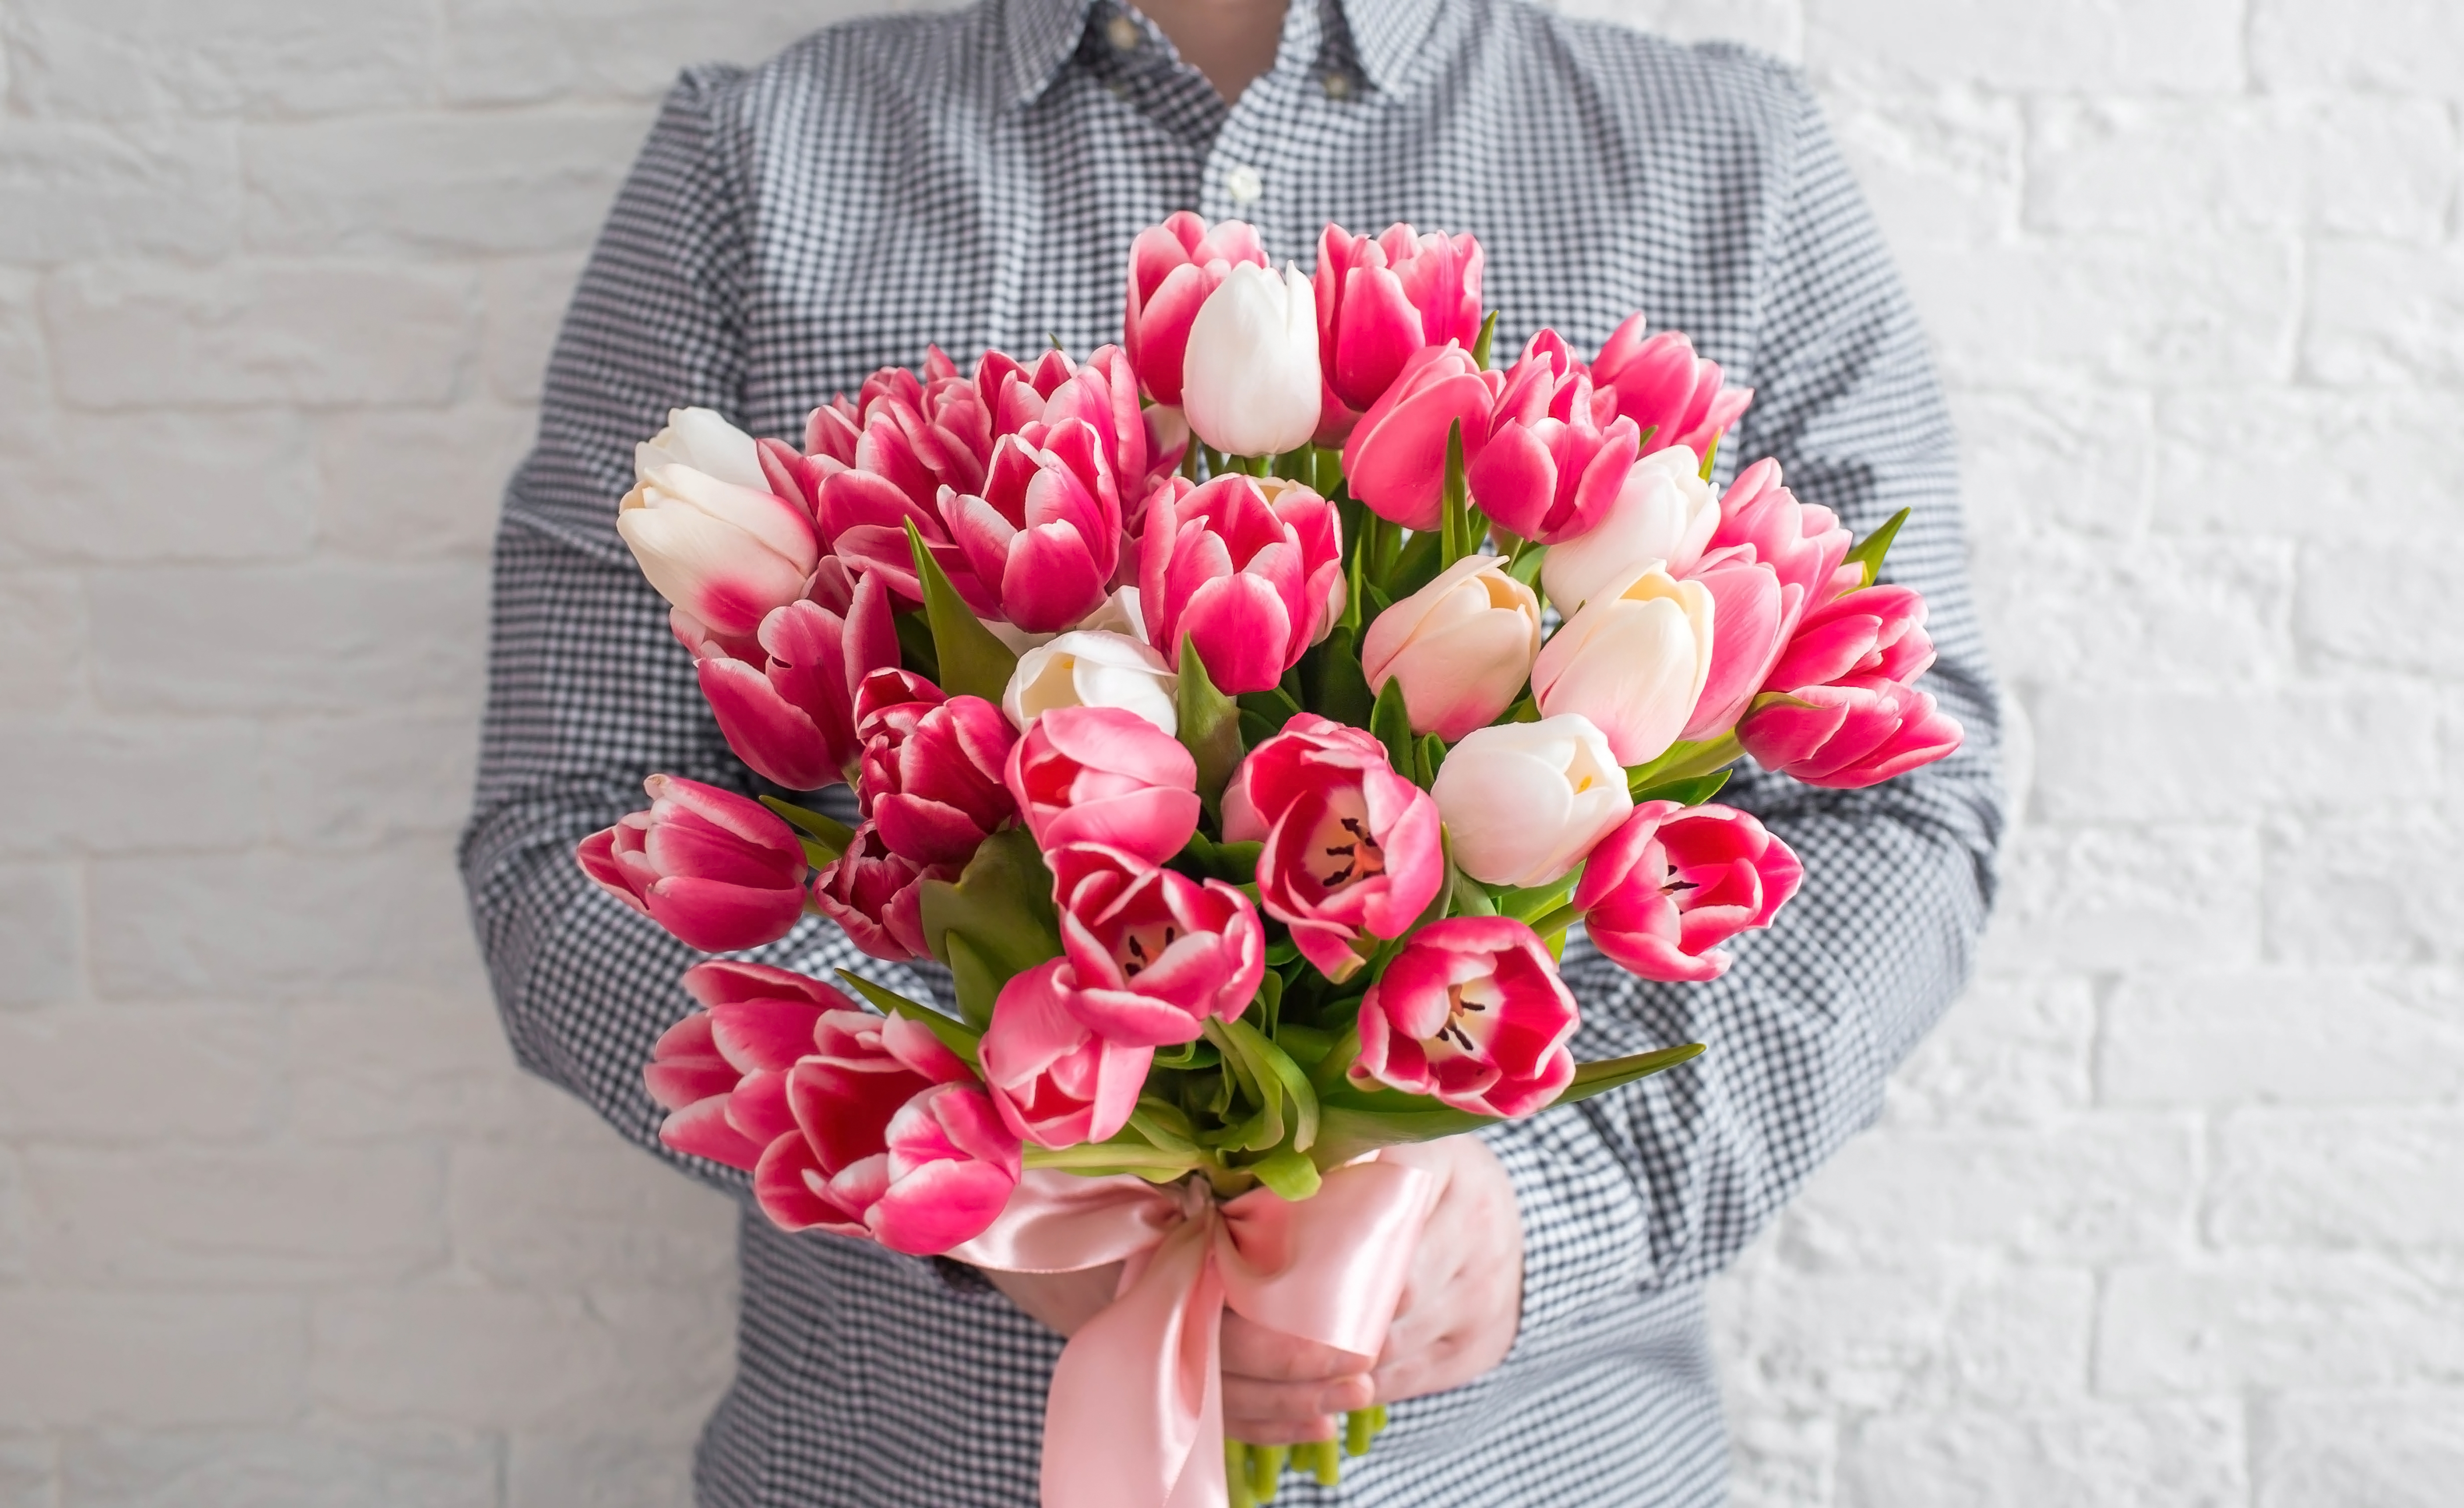 Un jeune homme tenant des fleurs | Source : Shutterstock